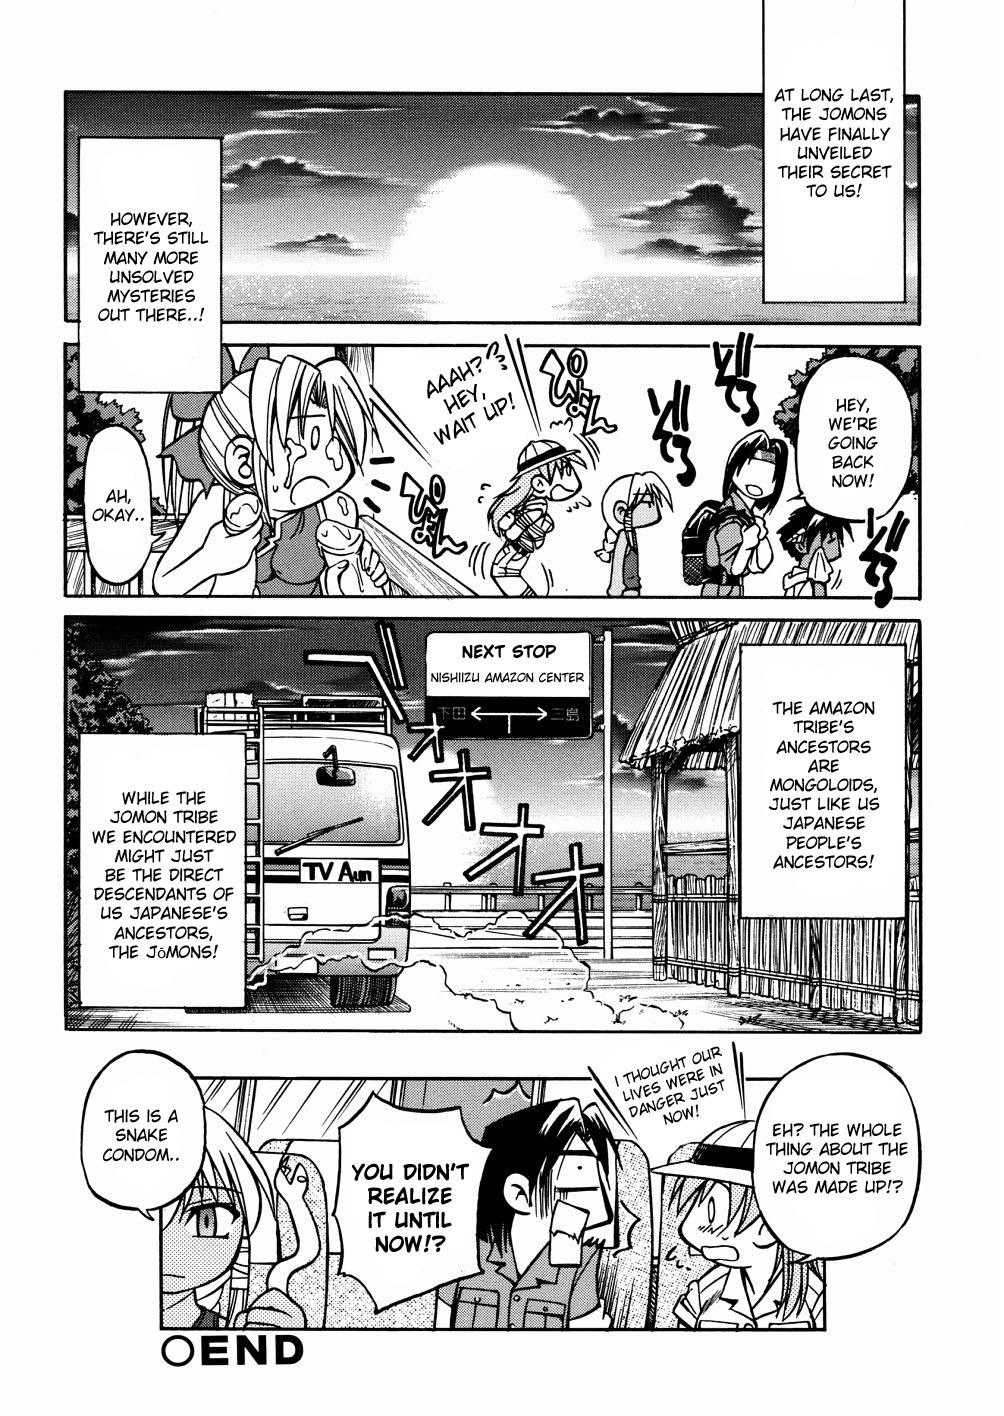 Kawaoka Hiro Tanken Series Amazon Oudan 16 Page! Jinseki Mitou no Jungle ni Nazo no Genjuumin-zoku Jomon wa Jitsuzai Shita!! | Jomon Tribe 15